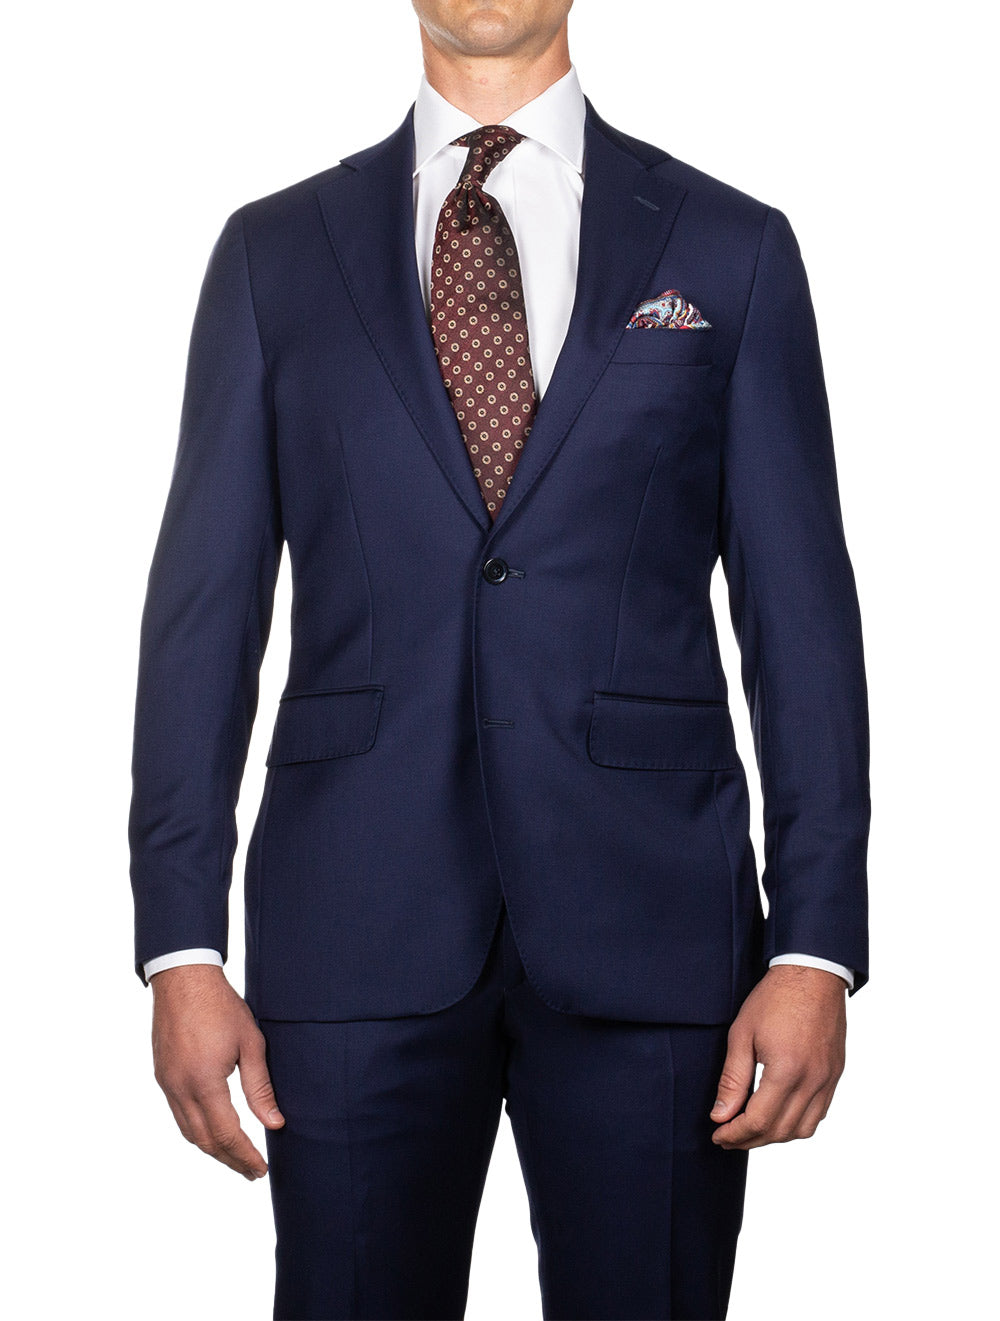 Louis Copeland Plain Suit Blue 2 piece 2 button notch lapel soft shoulder flap pockets 2